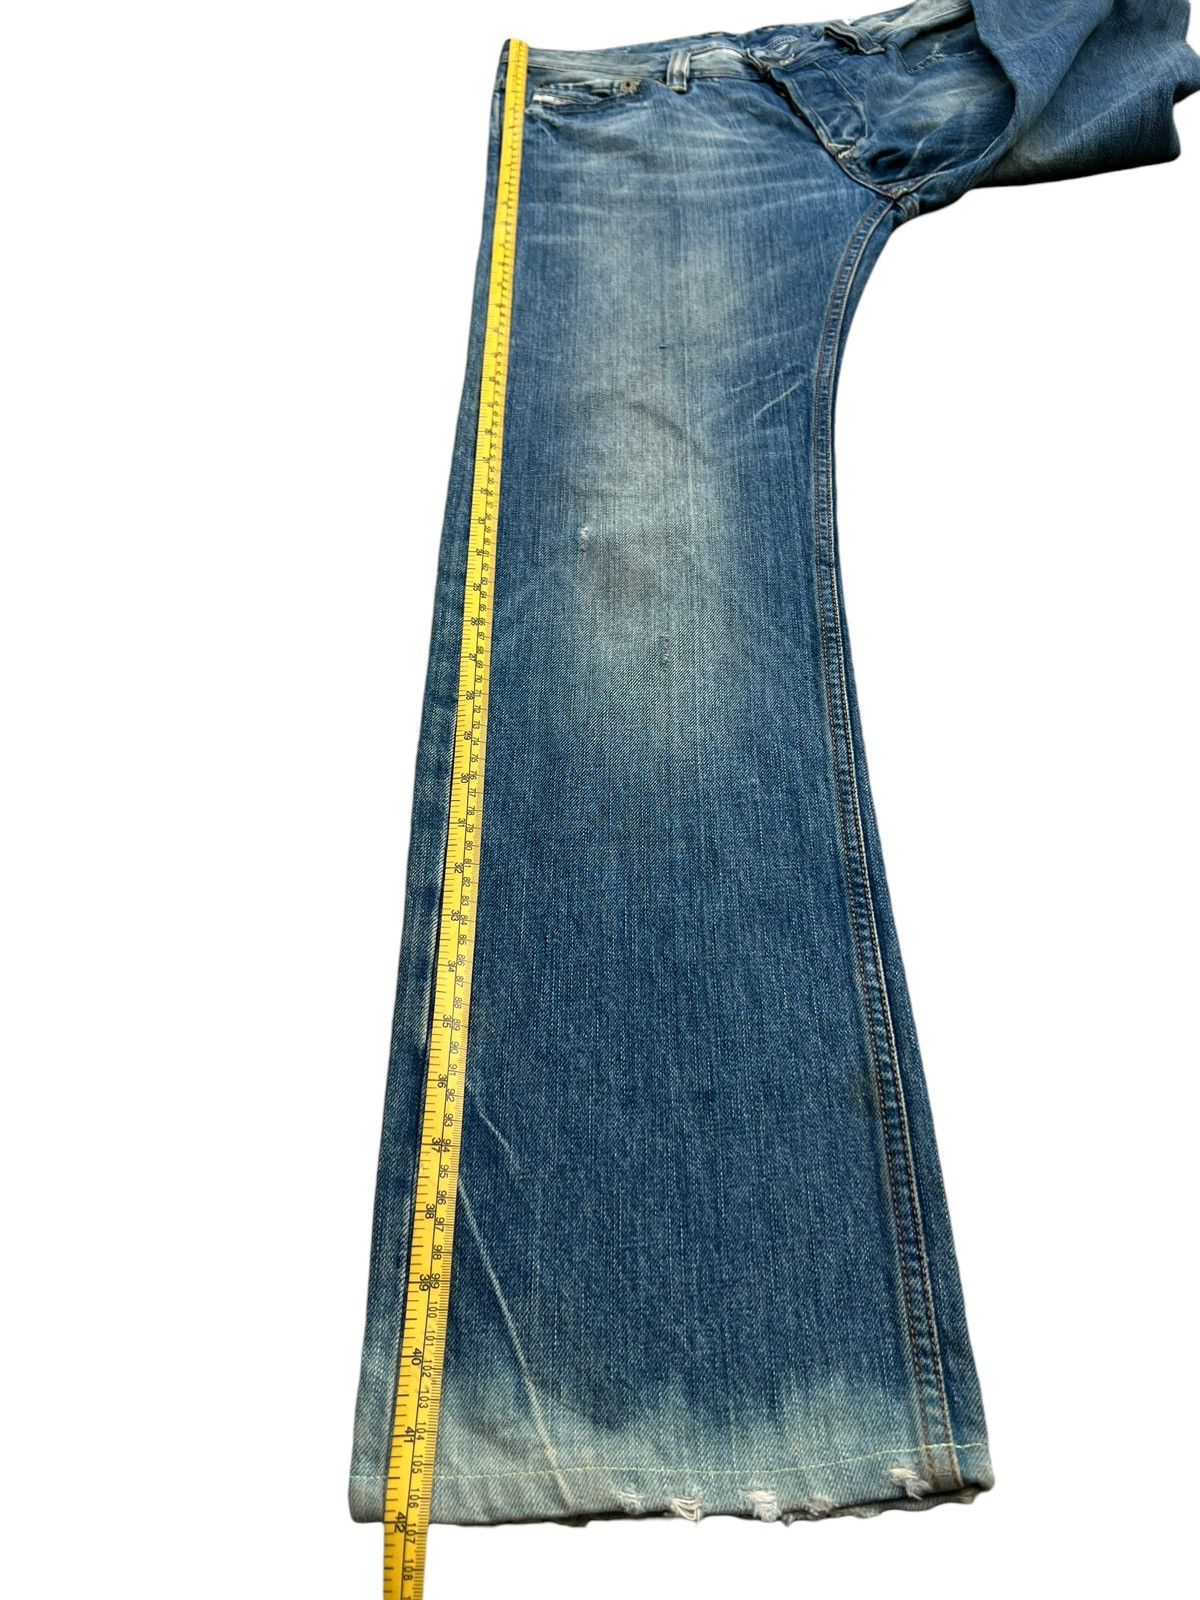 Diesel Mudwash Distressed Straightcut Denim Jeans 33x32 - 13